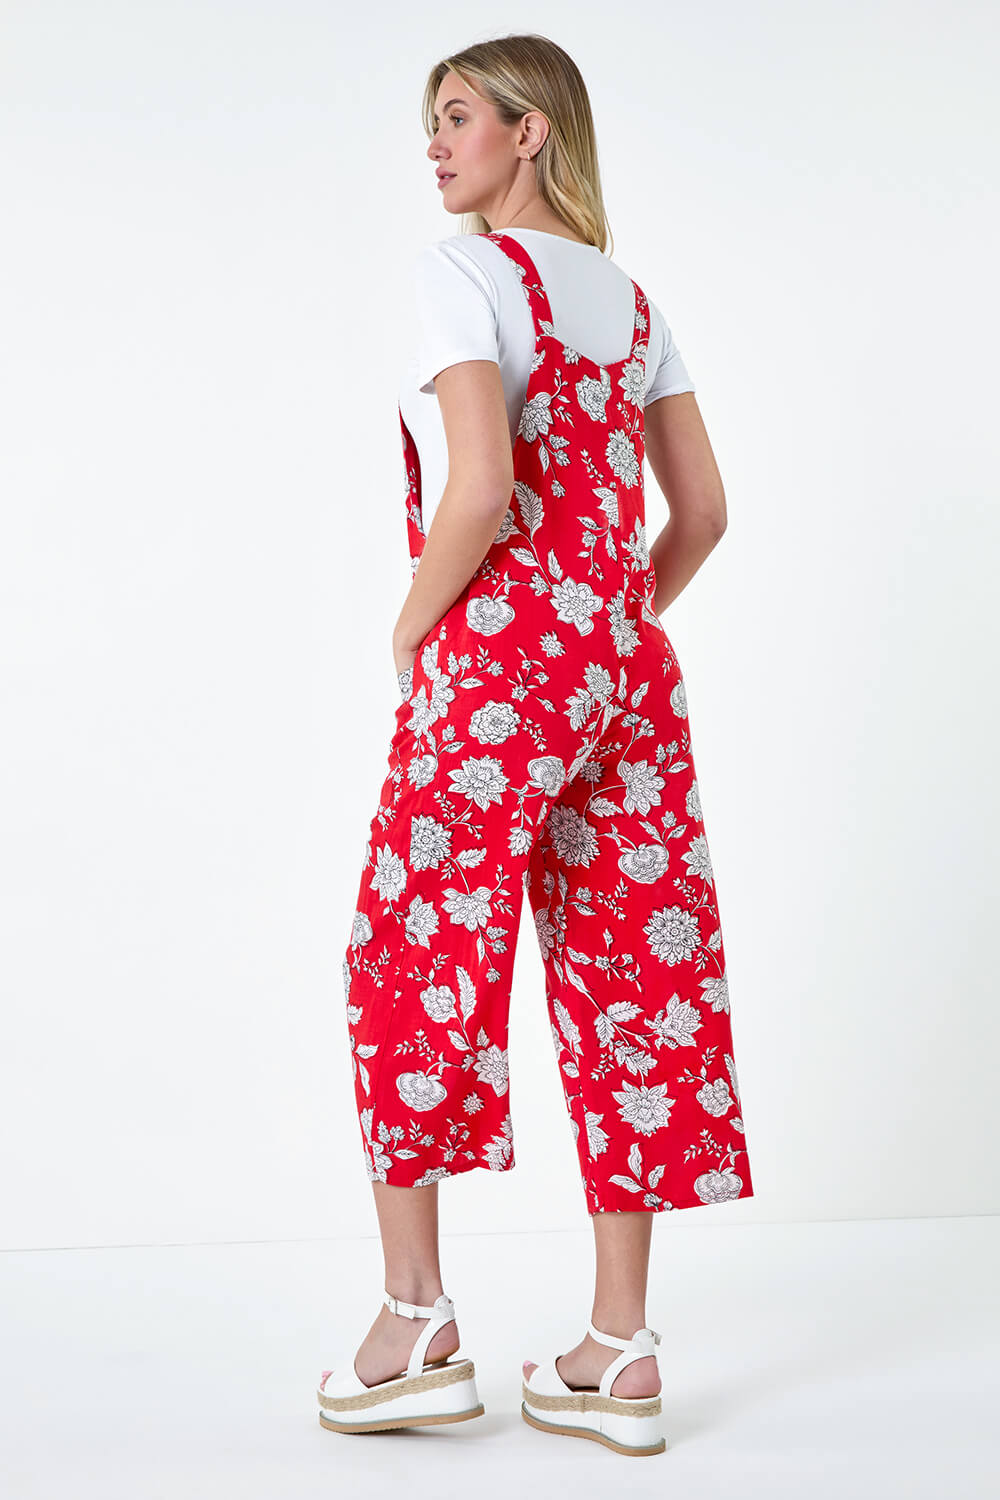 CORAL Floral Print Pocket Jumpsuit, Image 3 of 5